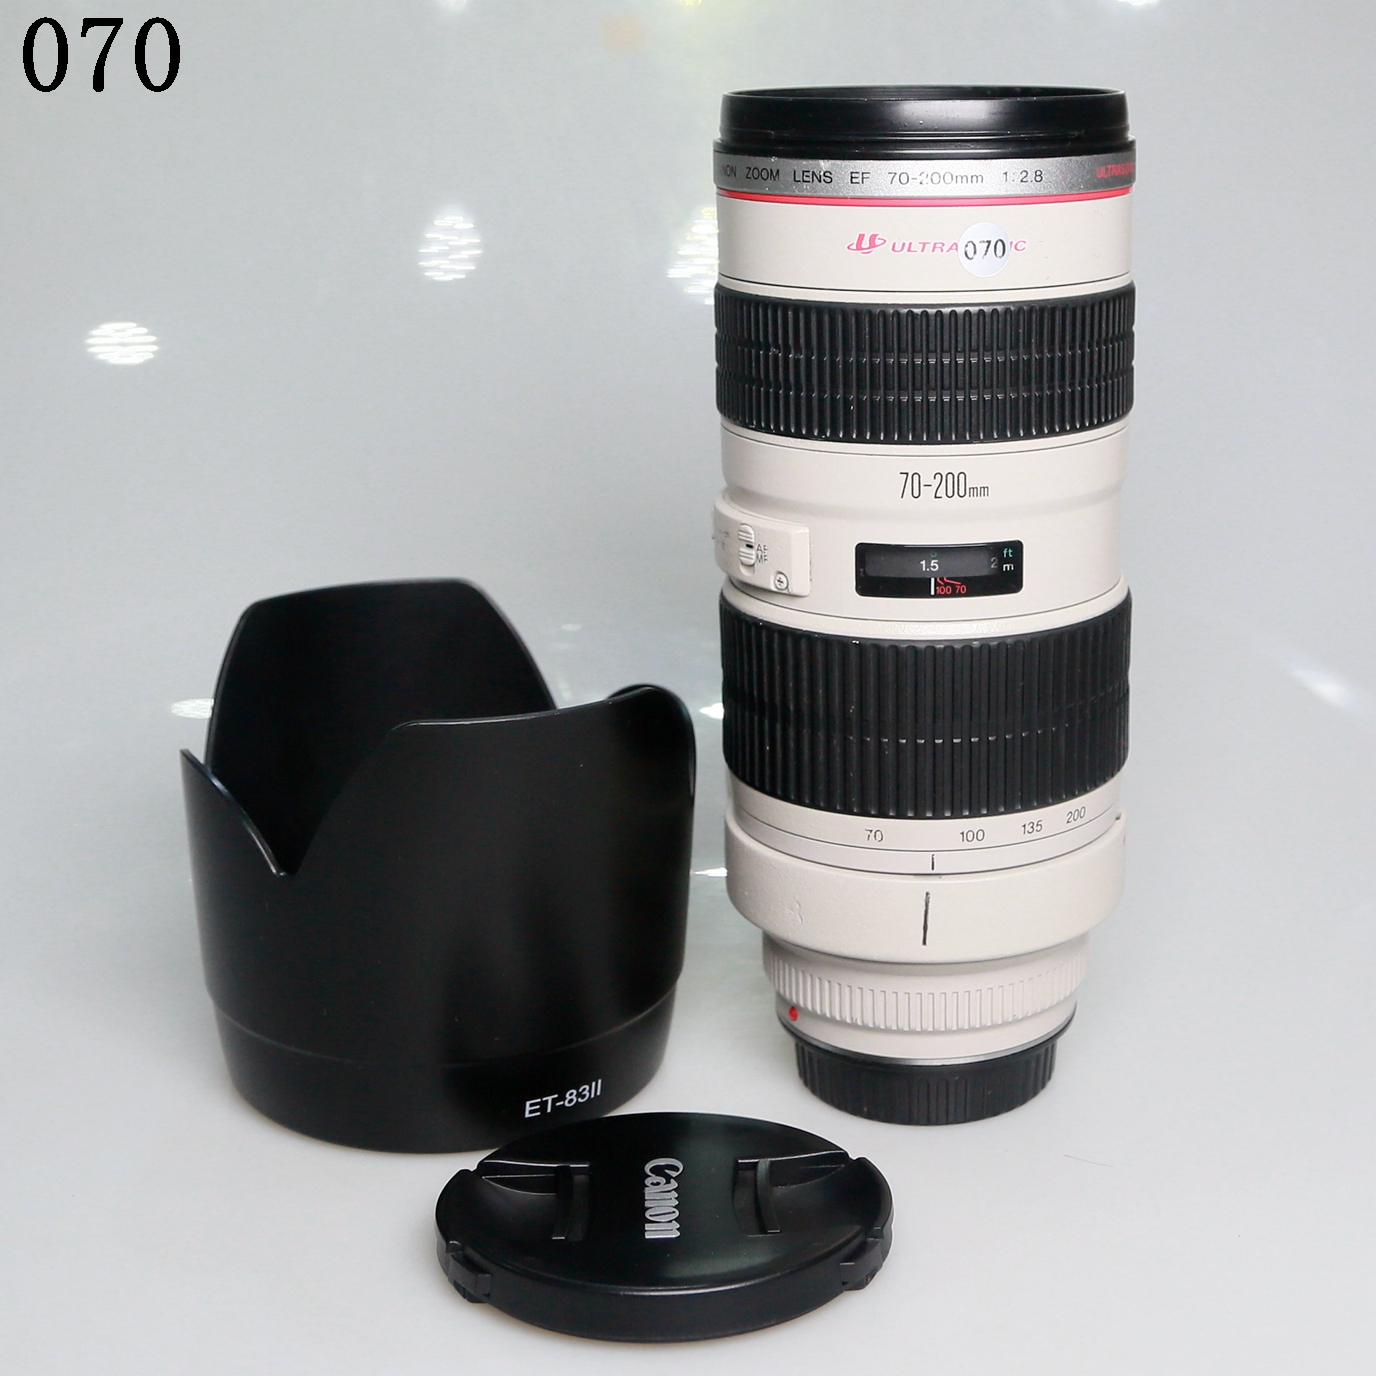 佳能 EF 70-200mm f/2.8L USM(小白)长焦镜头编号070